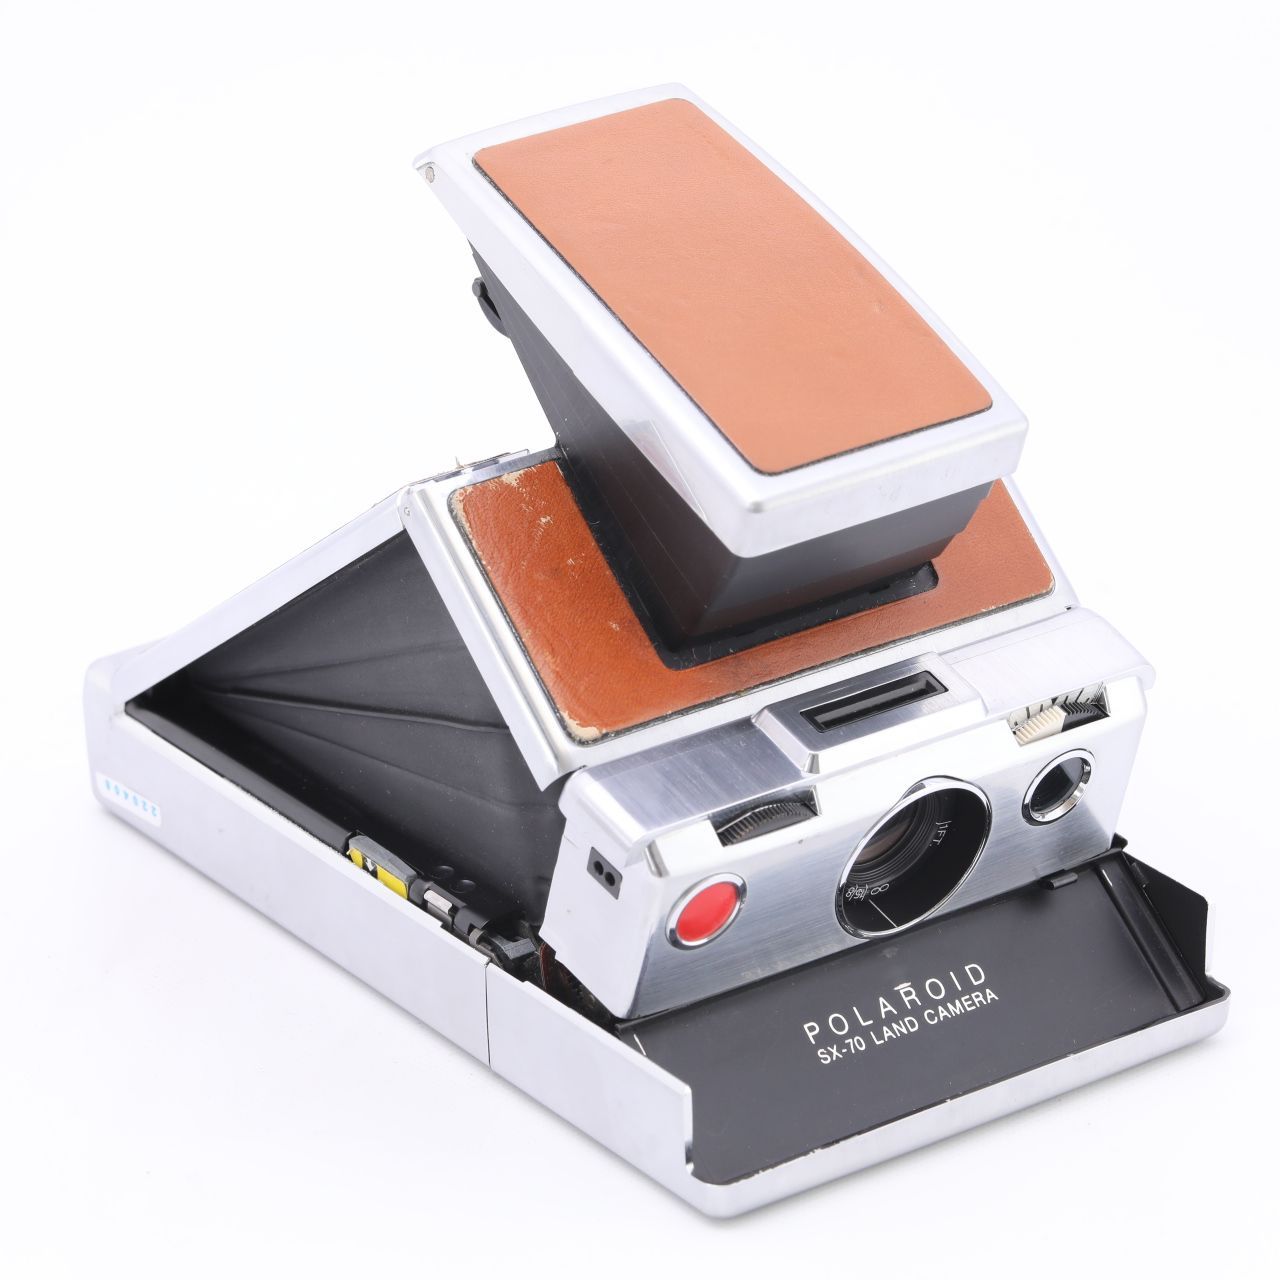 Polaroid ポラロイド SX-70 LAND CAMERA フィルムカメラ - メルカリ